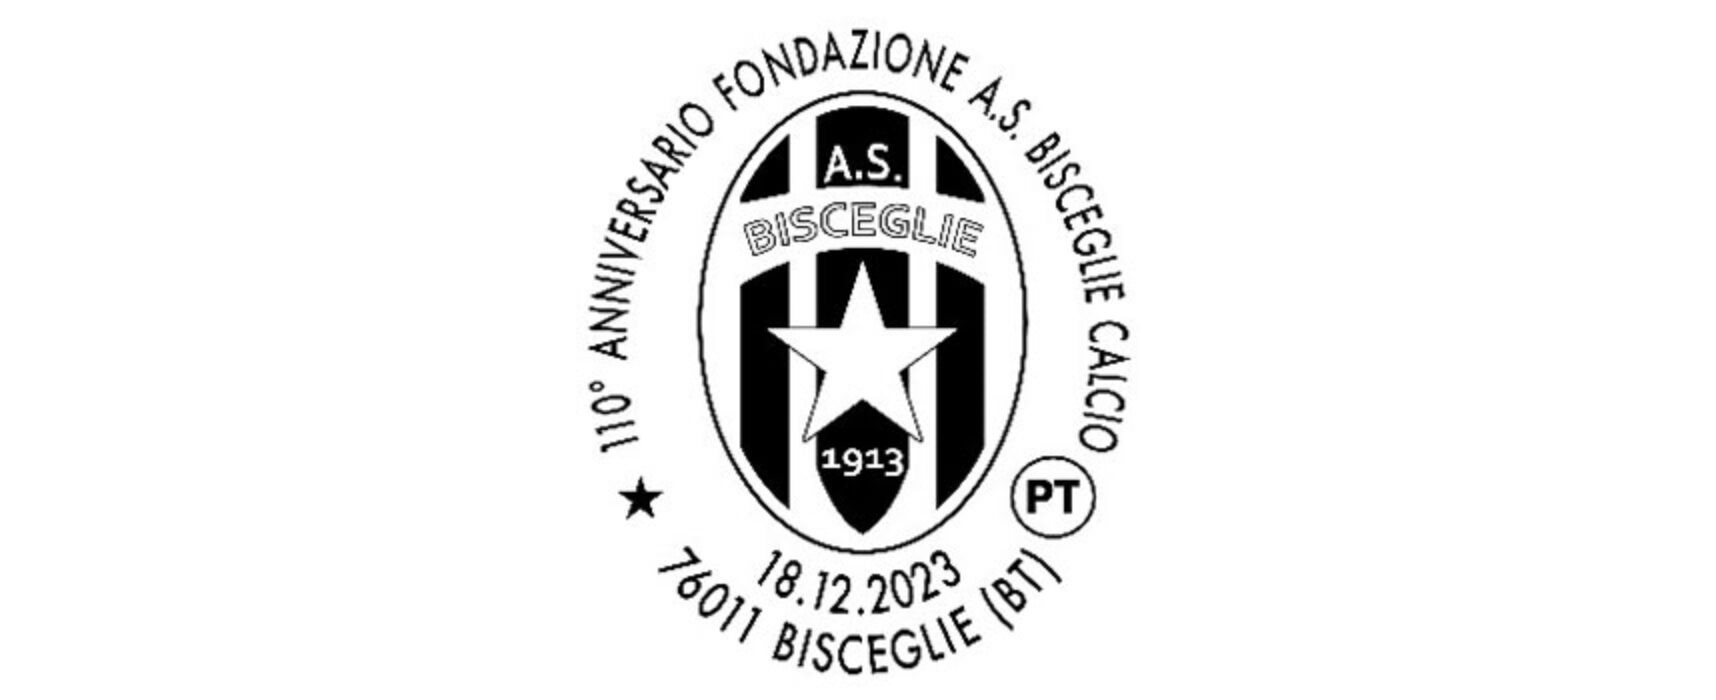 Poste Italiane attiva l’annullo filatelico per il 110° anniversario del Bisceglie calcio